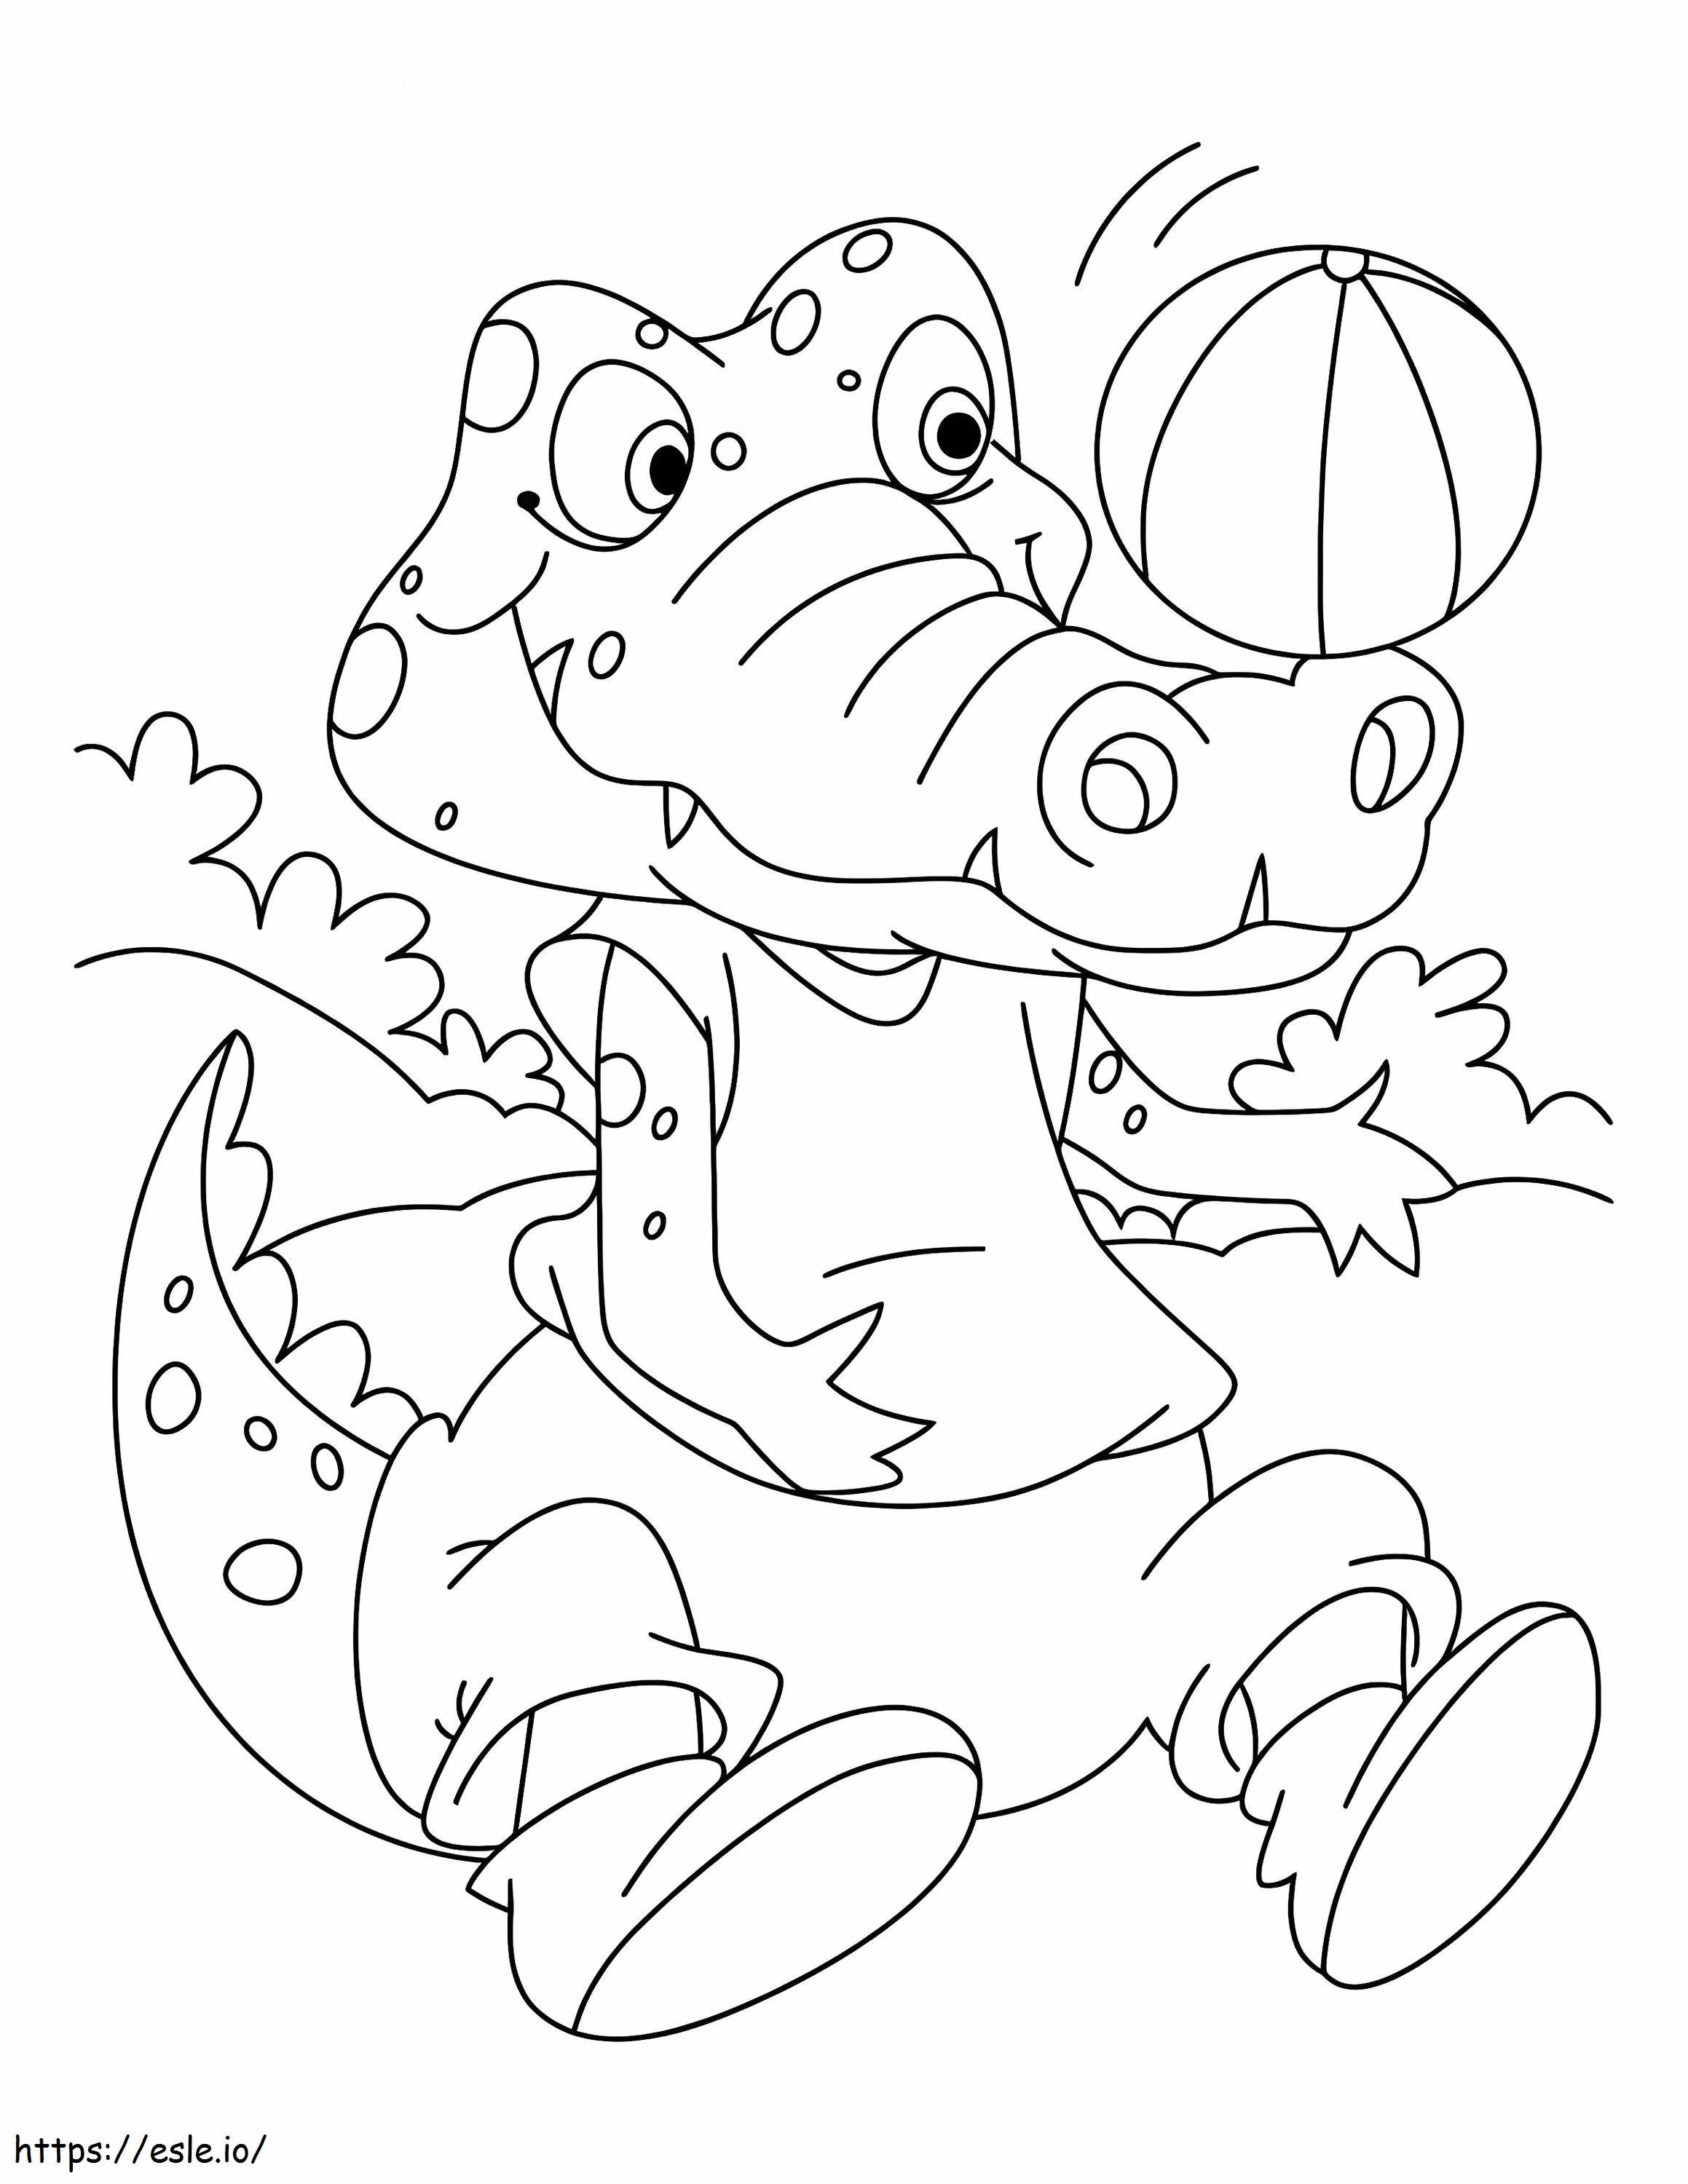 Adorable Crocodile coloring page